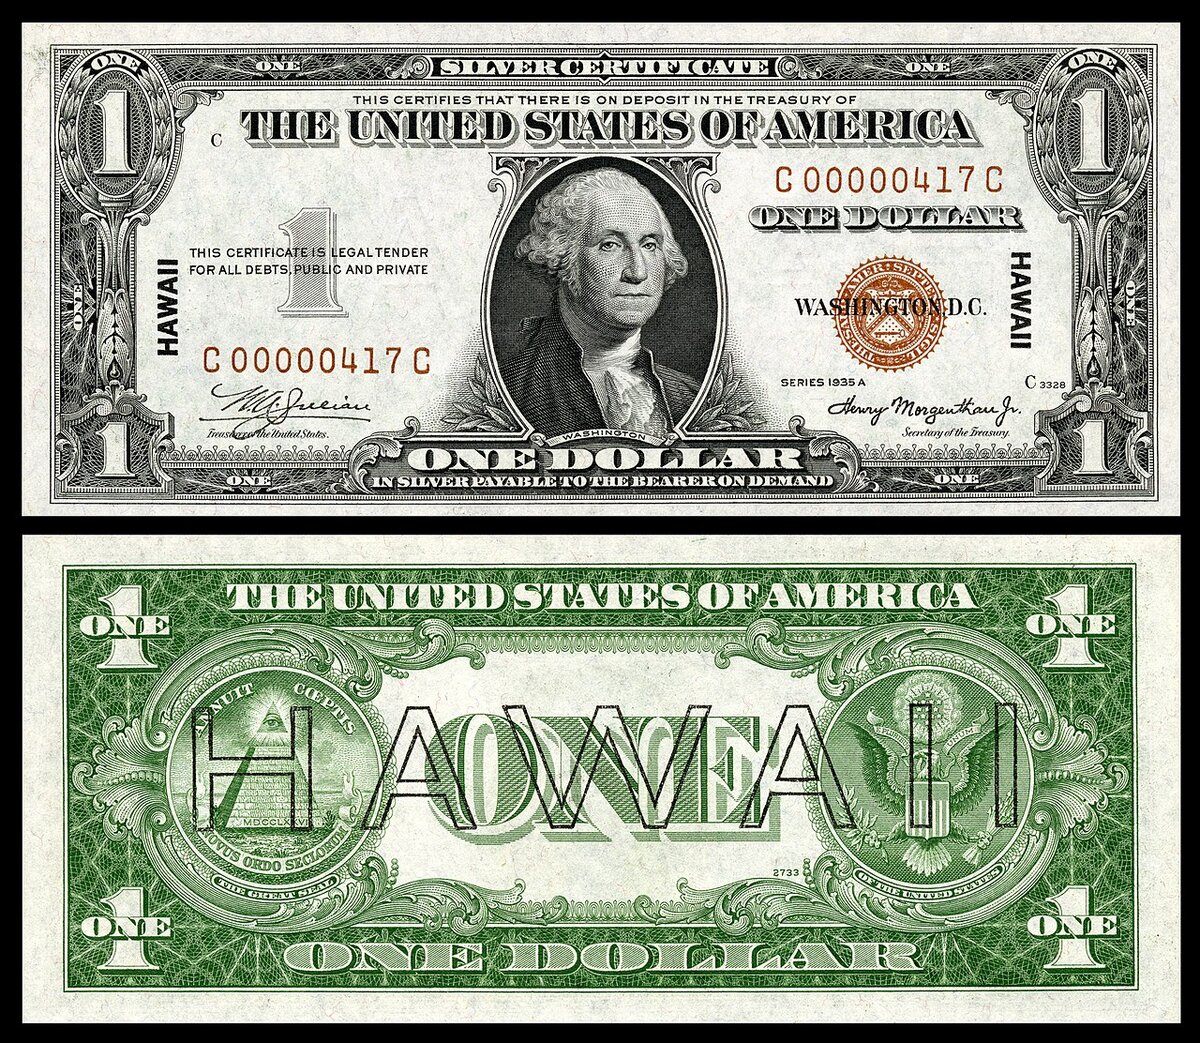 1 доллар 1935 года с надпечаткой "Гавайи". Надпечатка Гавайи на долларах США после атаки Пёрл-Харбора, чтобы сразу вывести их из обращения на случай оккупации островов Японией в 1942 году. Источник фото: Википедия.